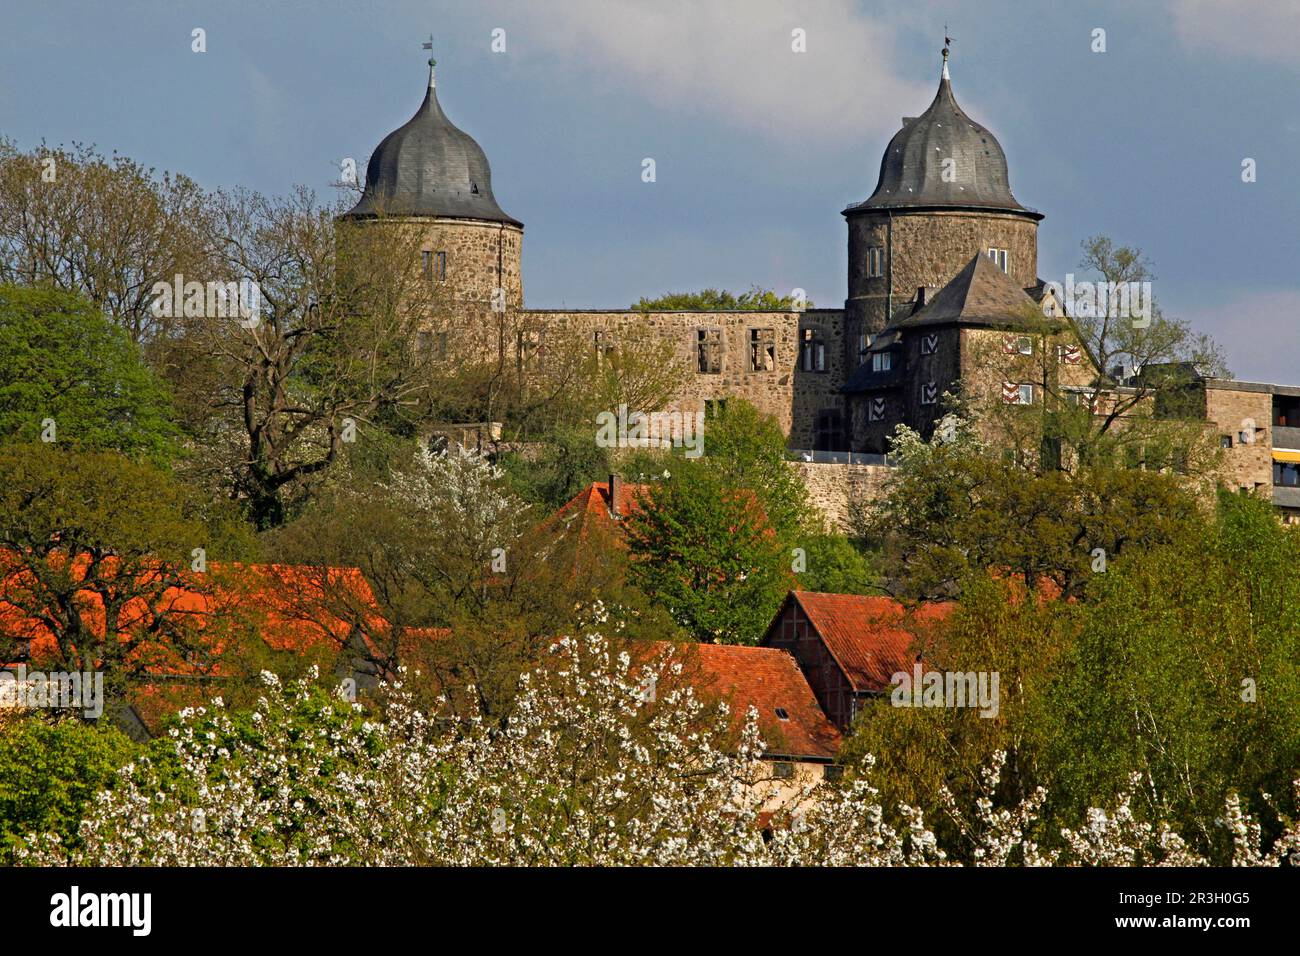 Sababurg, popolarmente conosciuto come Castello della bellezza addormentata dopo i fratelli Grimm, Hofgeismar, distretto di Kassel, Assia, Zappenburg, Zapfenburg, dorme Foto Stock